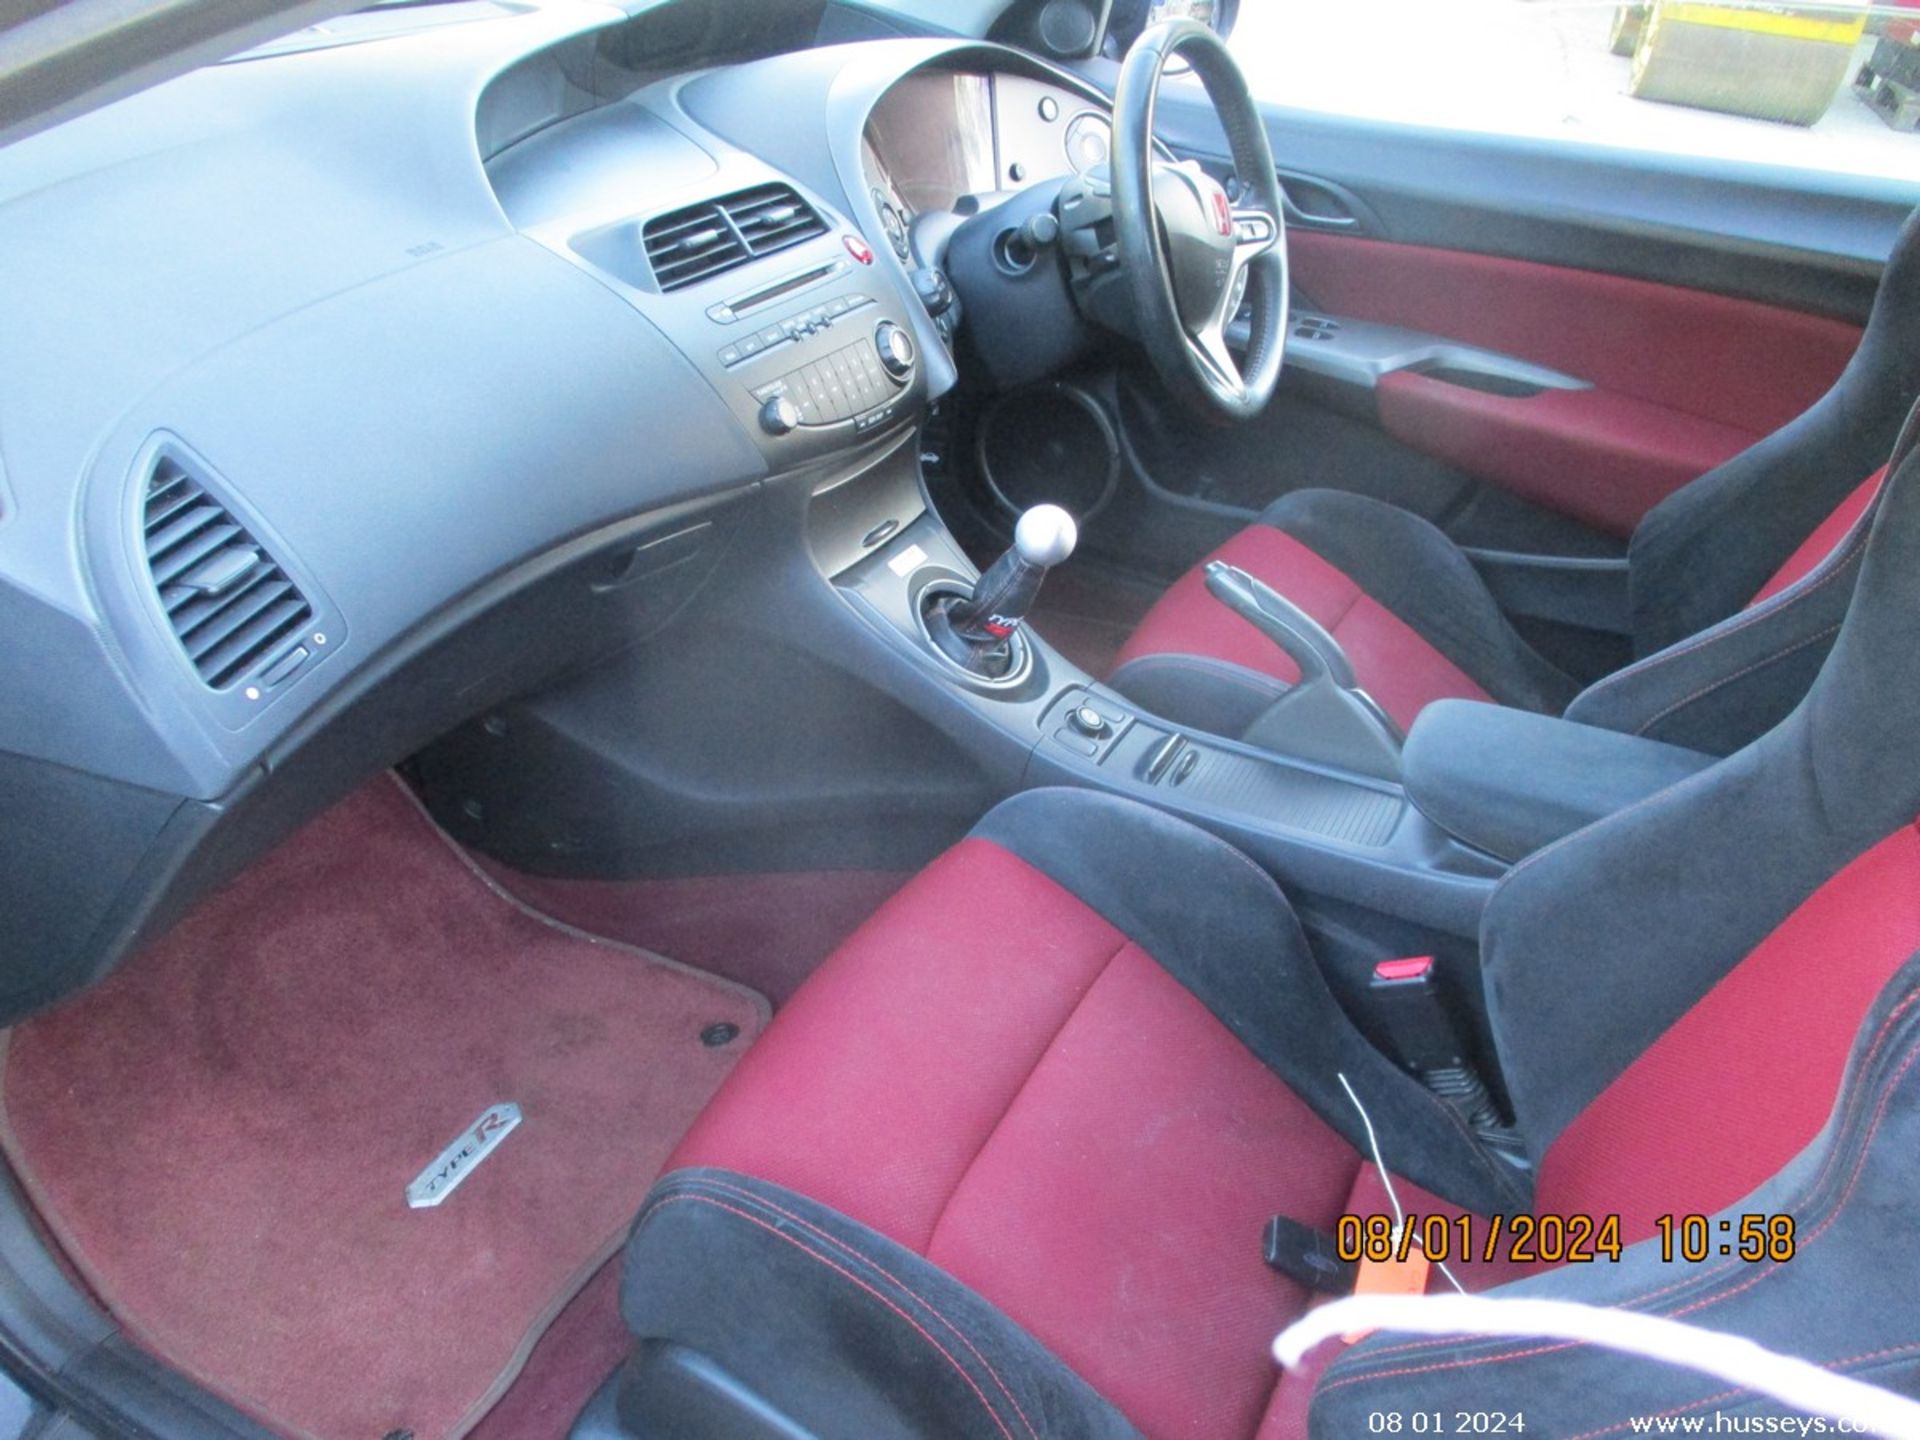 08/08 HONDA CIVIC TYPE-R GT I-VTEC - 1998cc 3dr Hatchback (Black, 95k) - Image 15 of 19